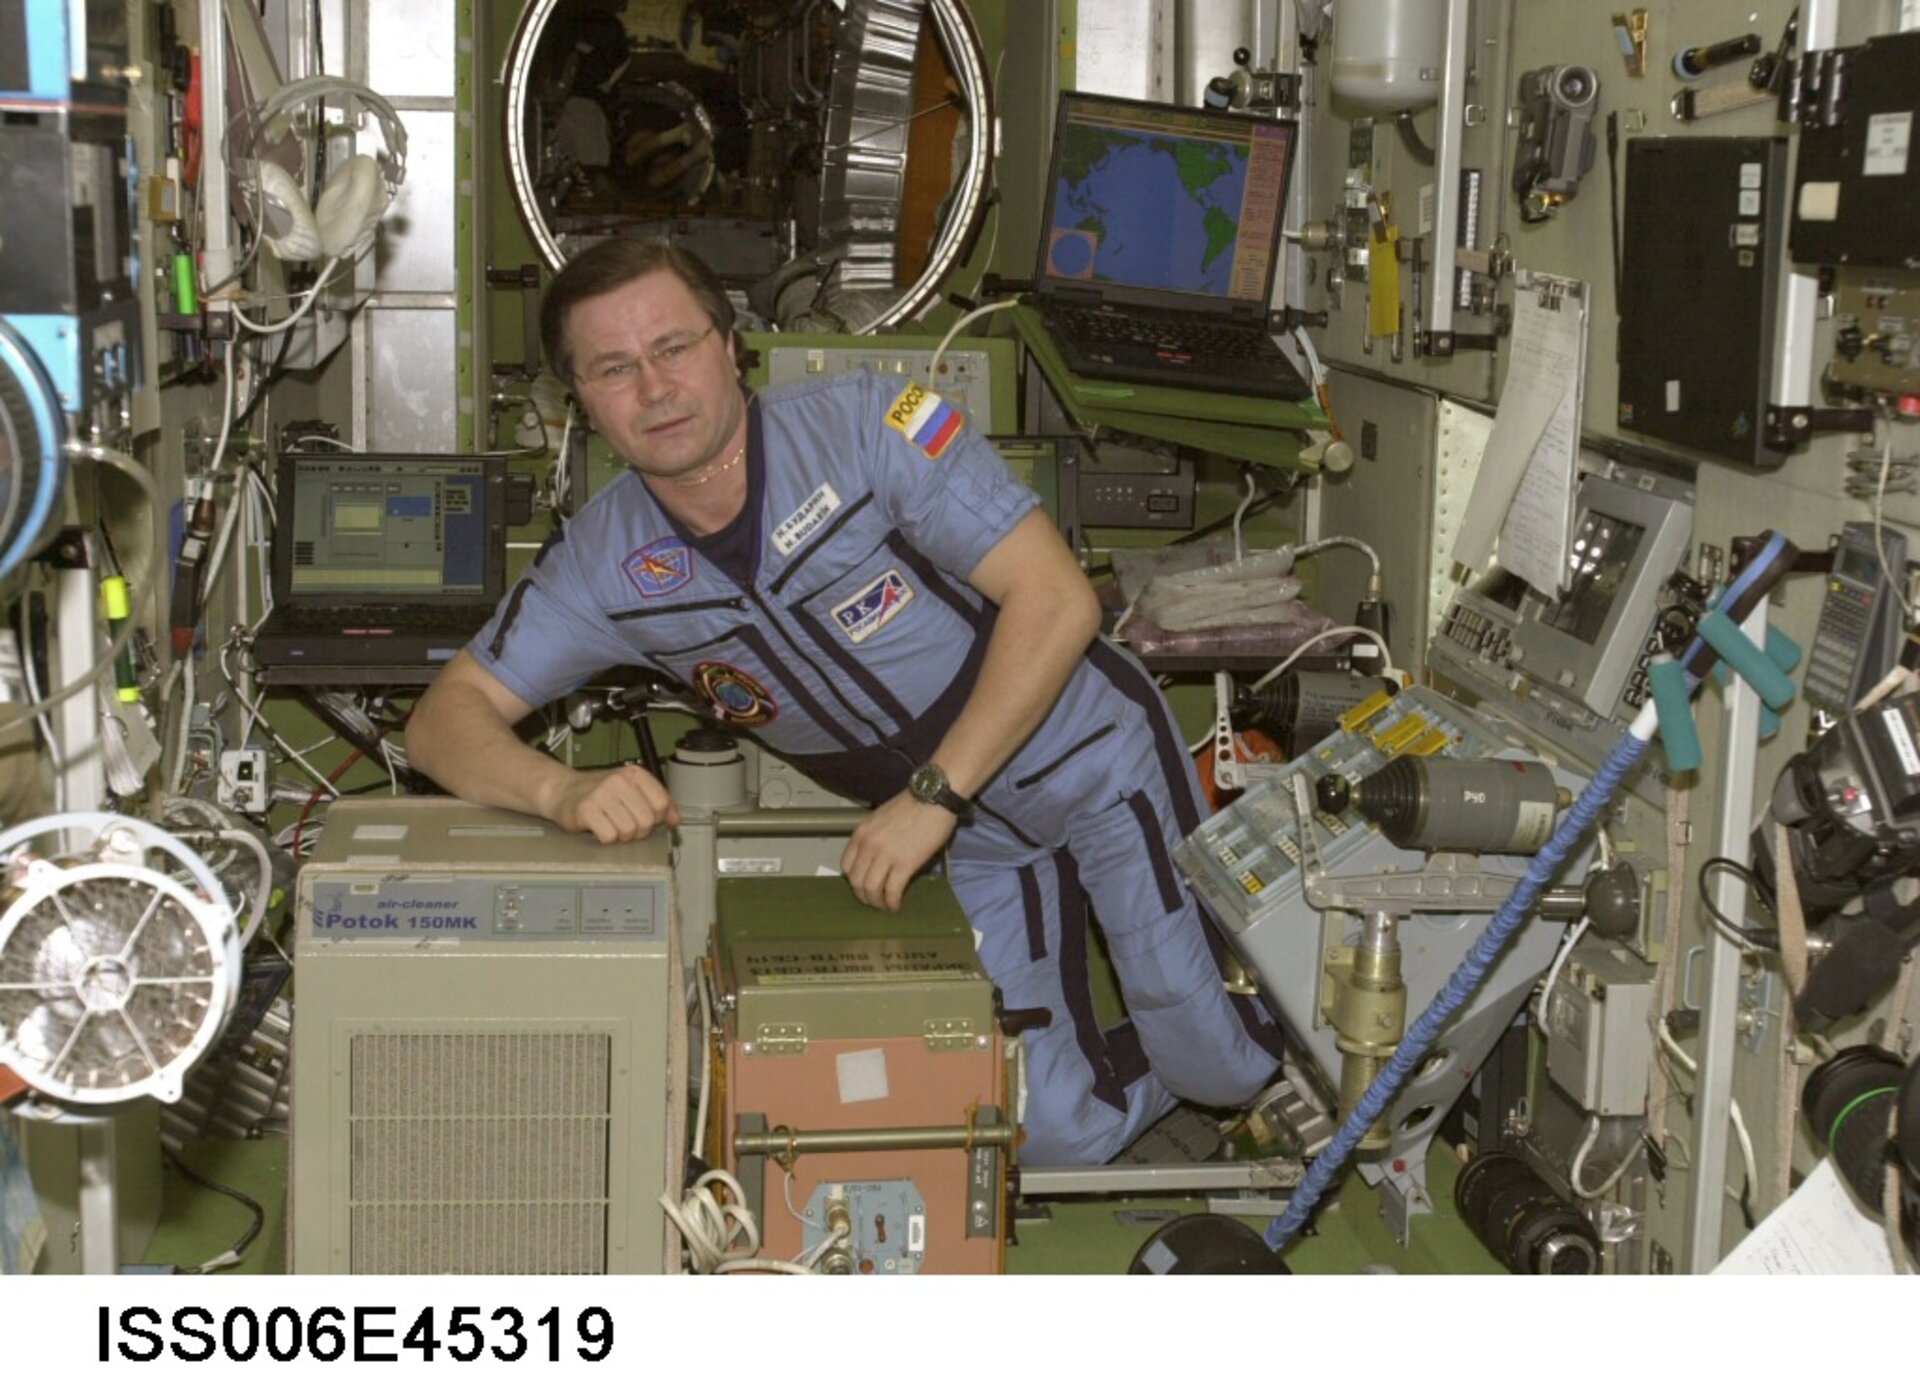 Cosmonaut Budarin near air cleaner